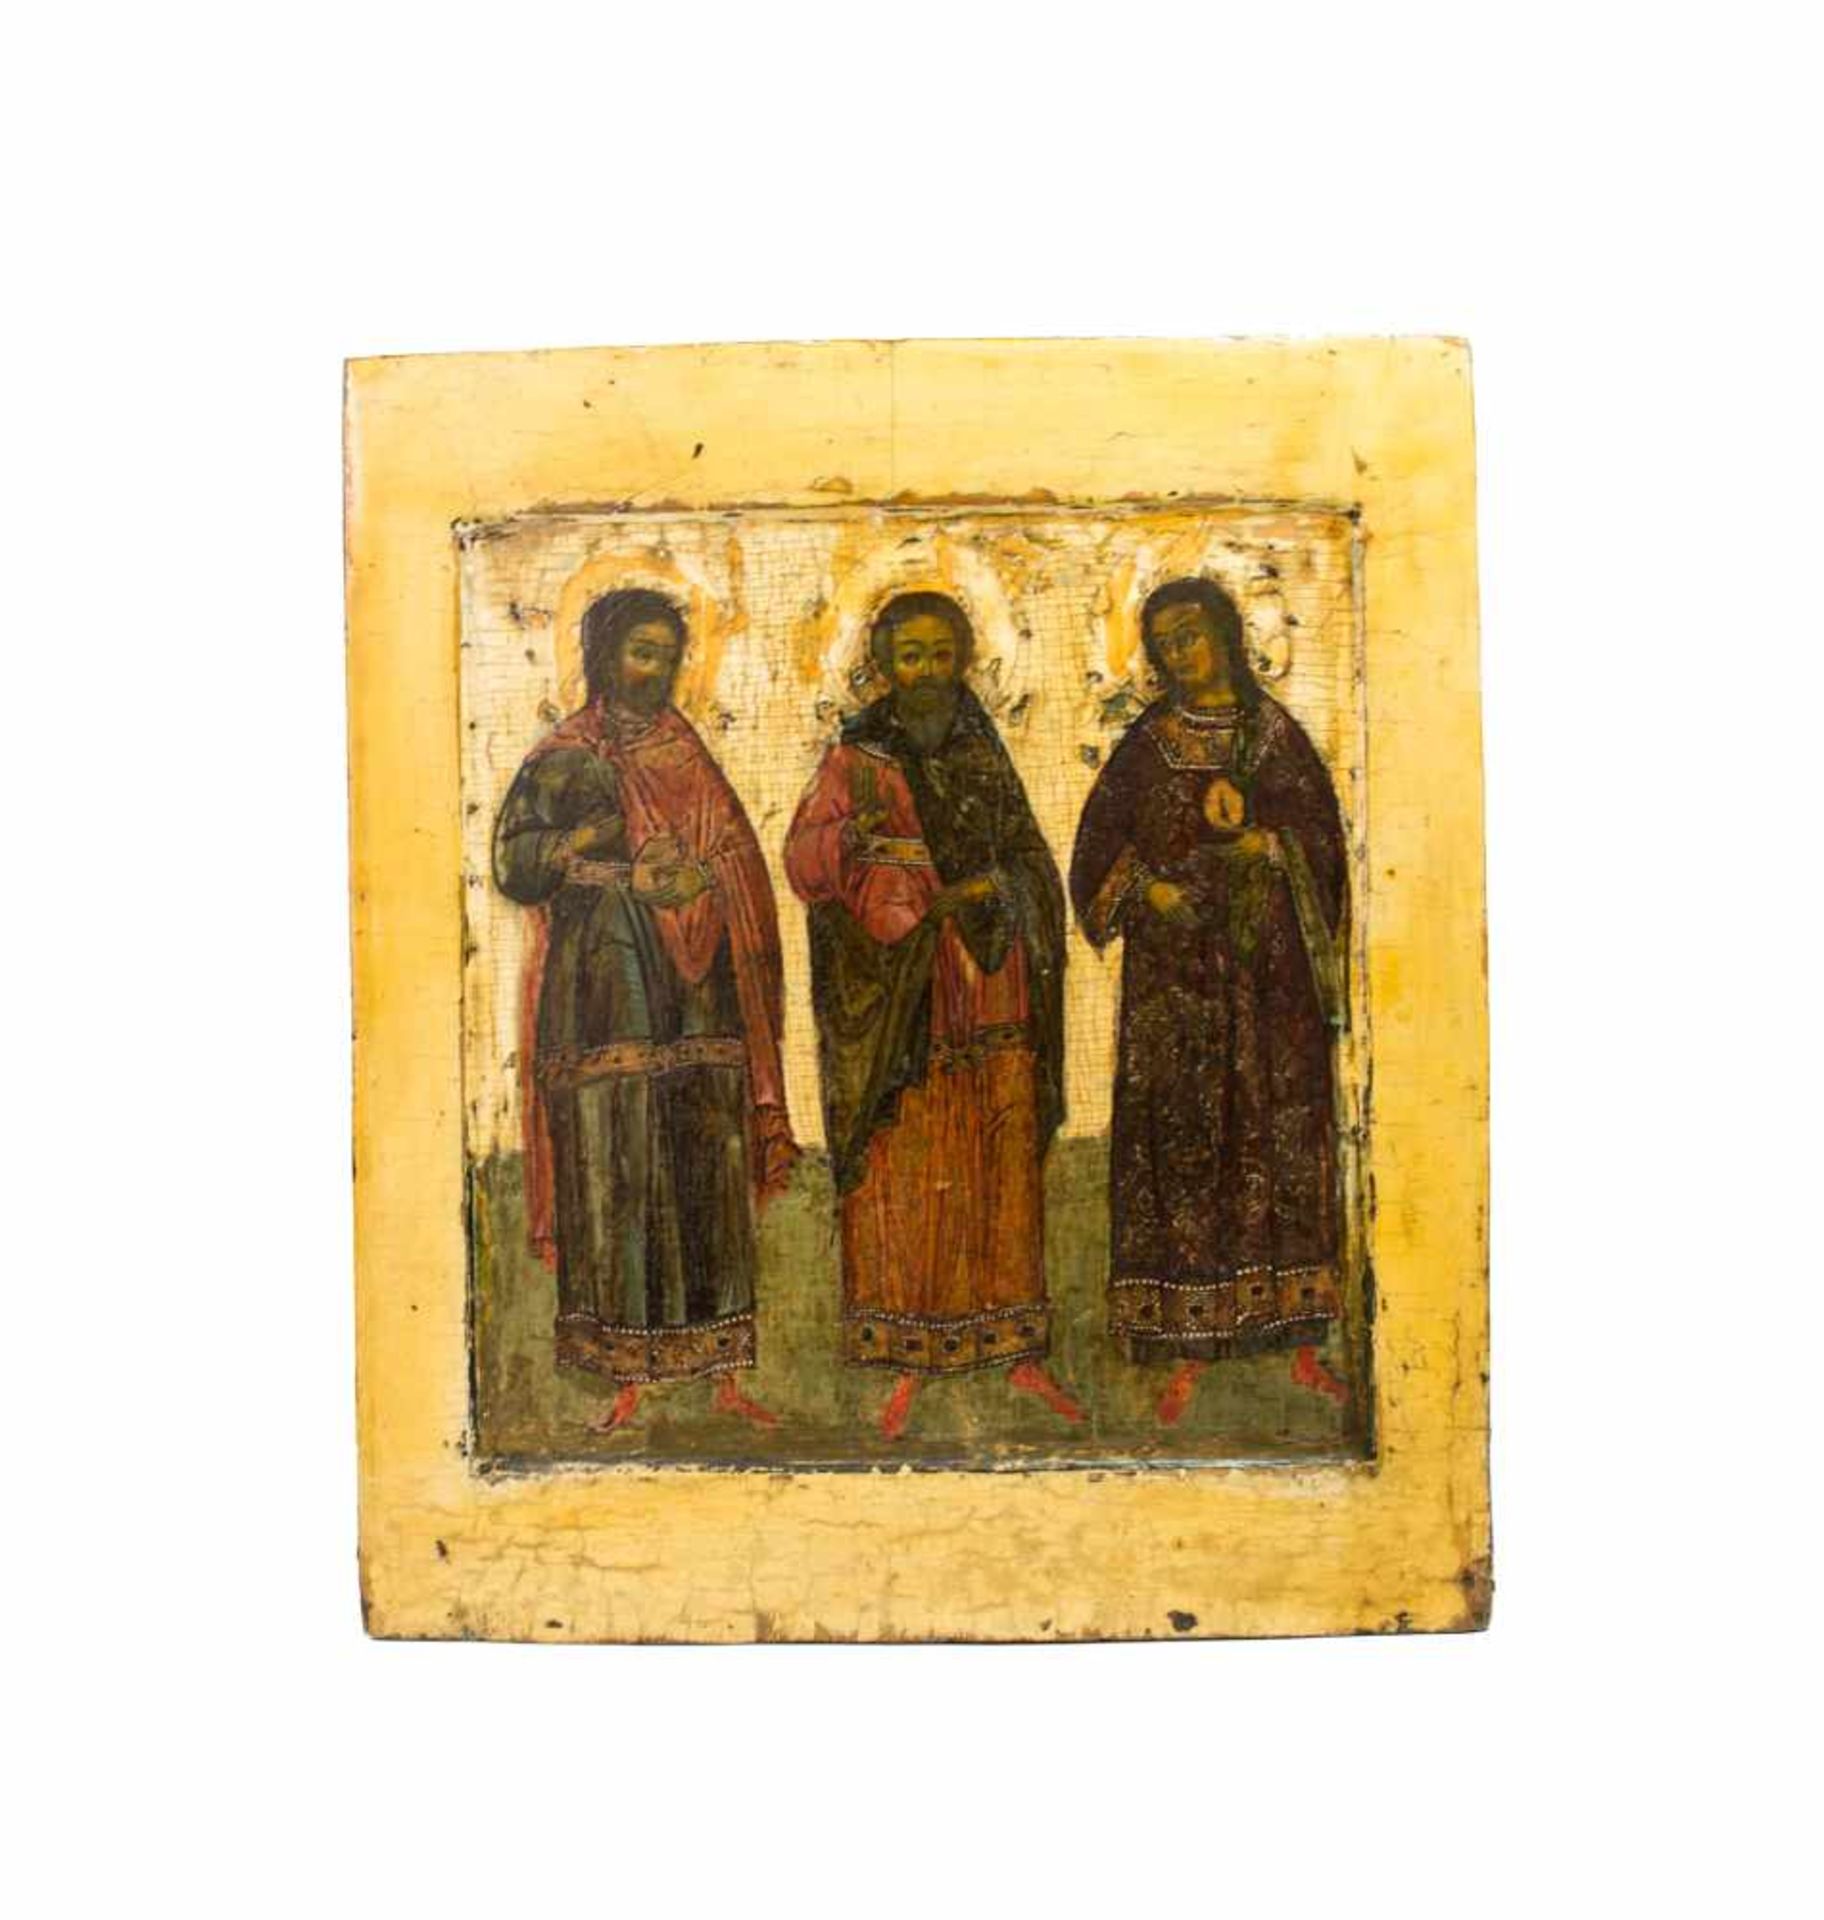 Ikone 'Drei Heilige'17. Jh., Tempera auf Holz, Kowtscheg, 31,5 cm x 28 cm, restauriert, mit